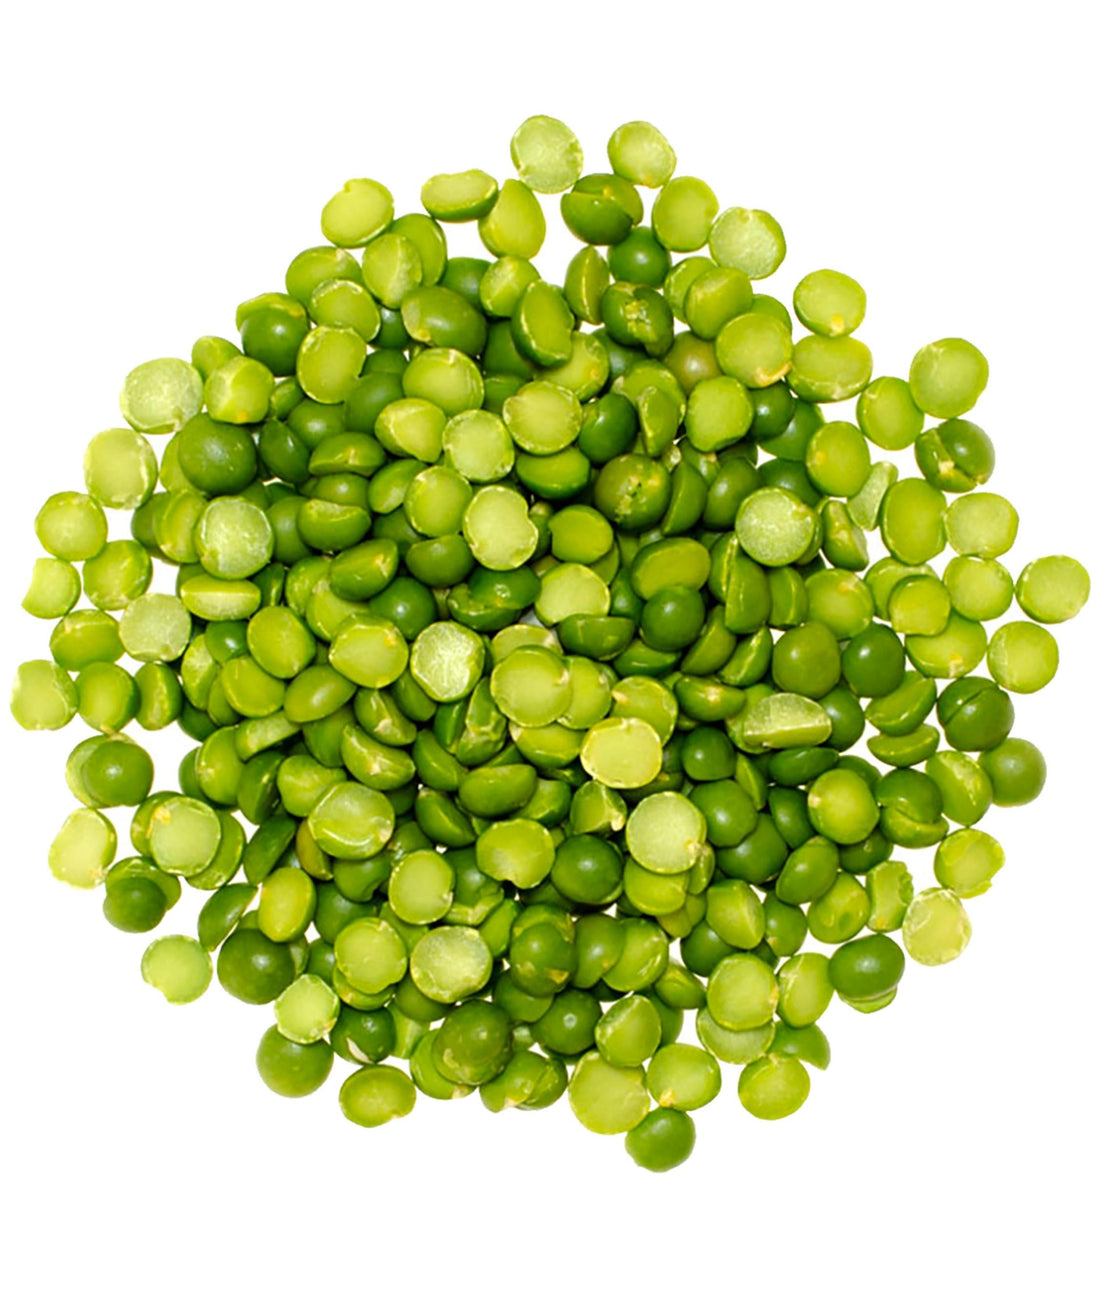 Green Split Peas | 3 LB